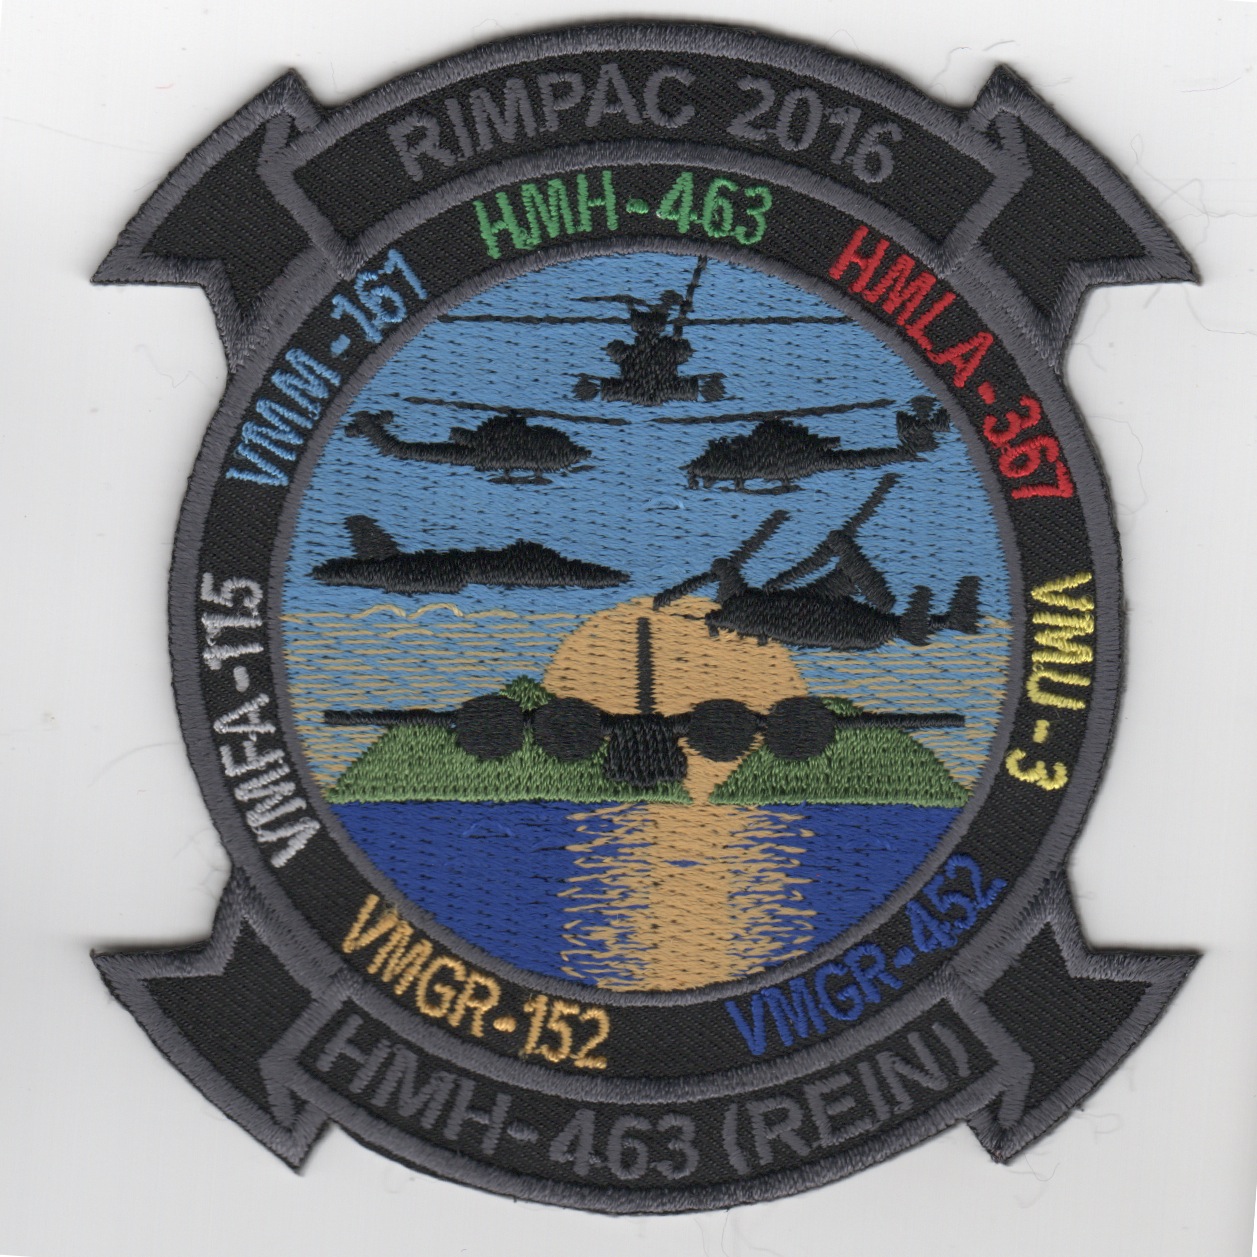 HMH-463 '2016 RIMPAC' Patch